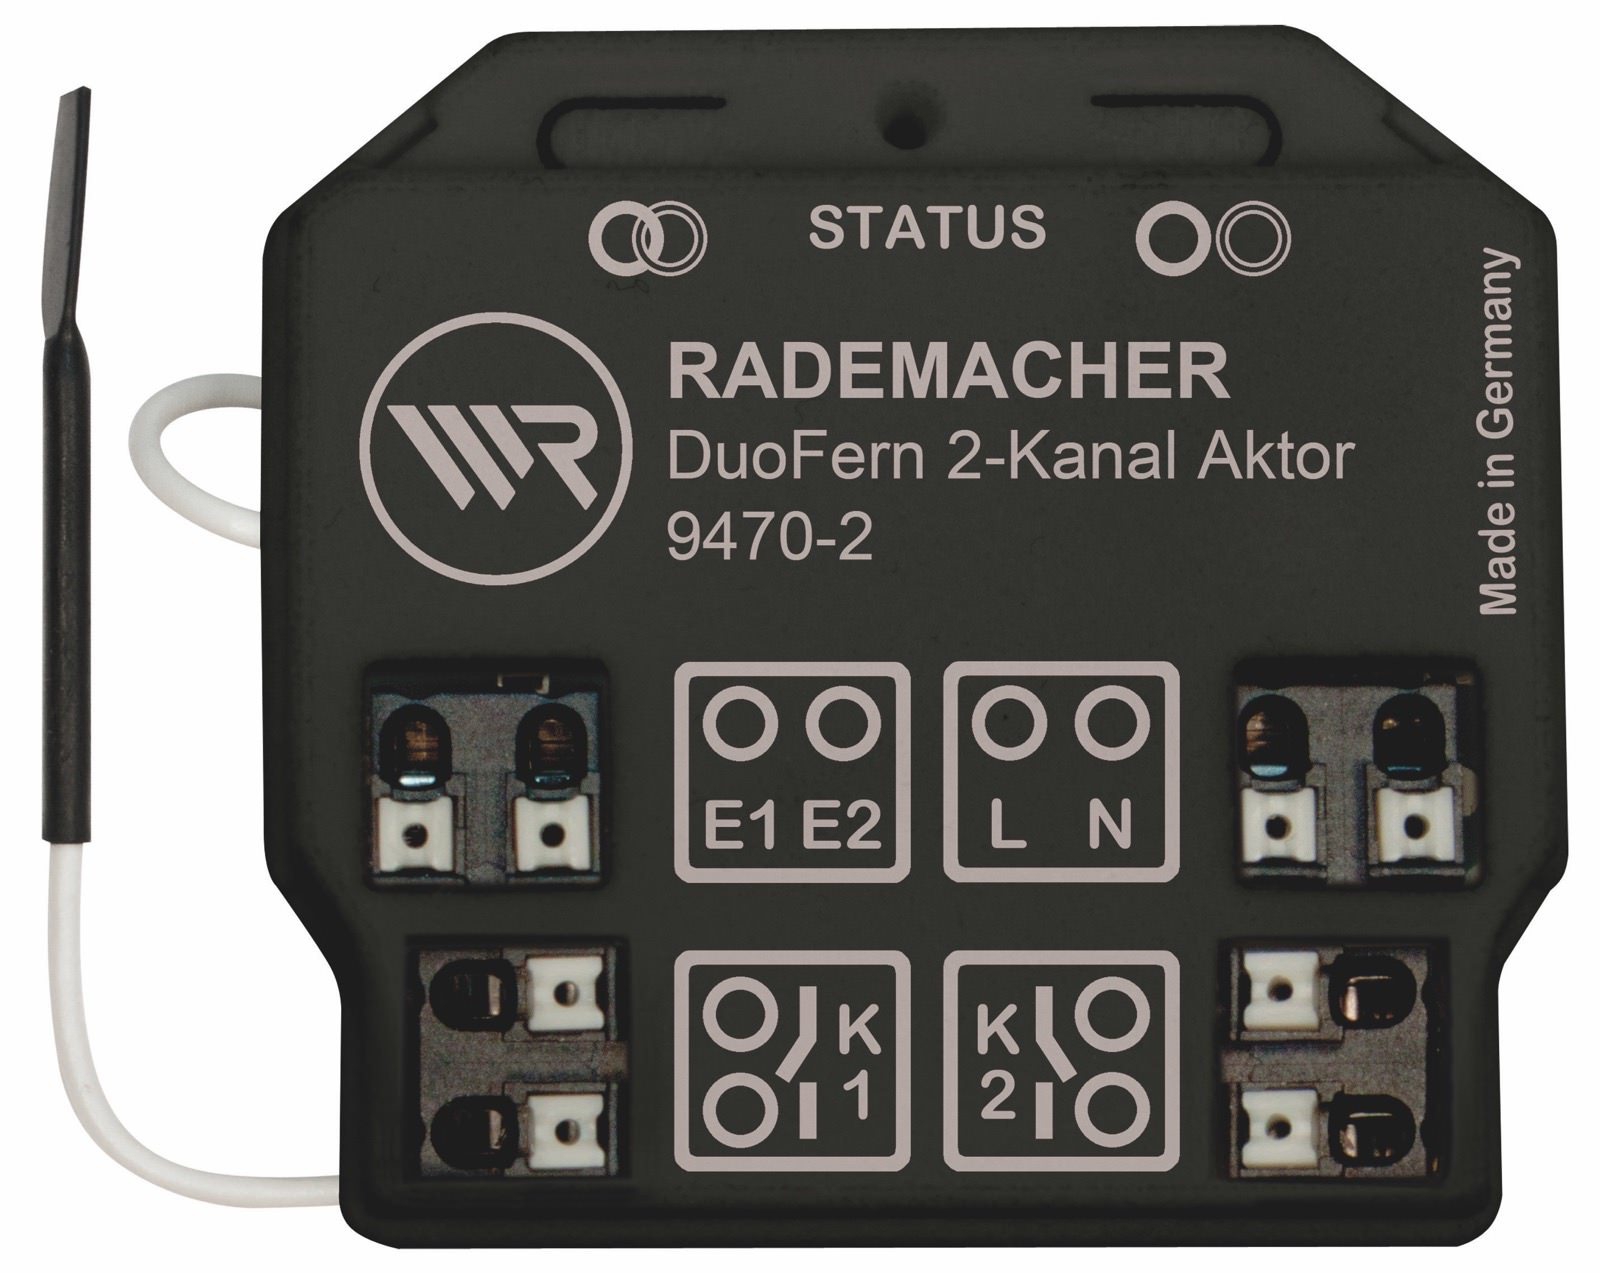 Rademacher DuoFern Universal-Aktor 9470-2, 2-Kanal Unterputz Funkempfänger